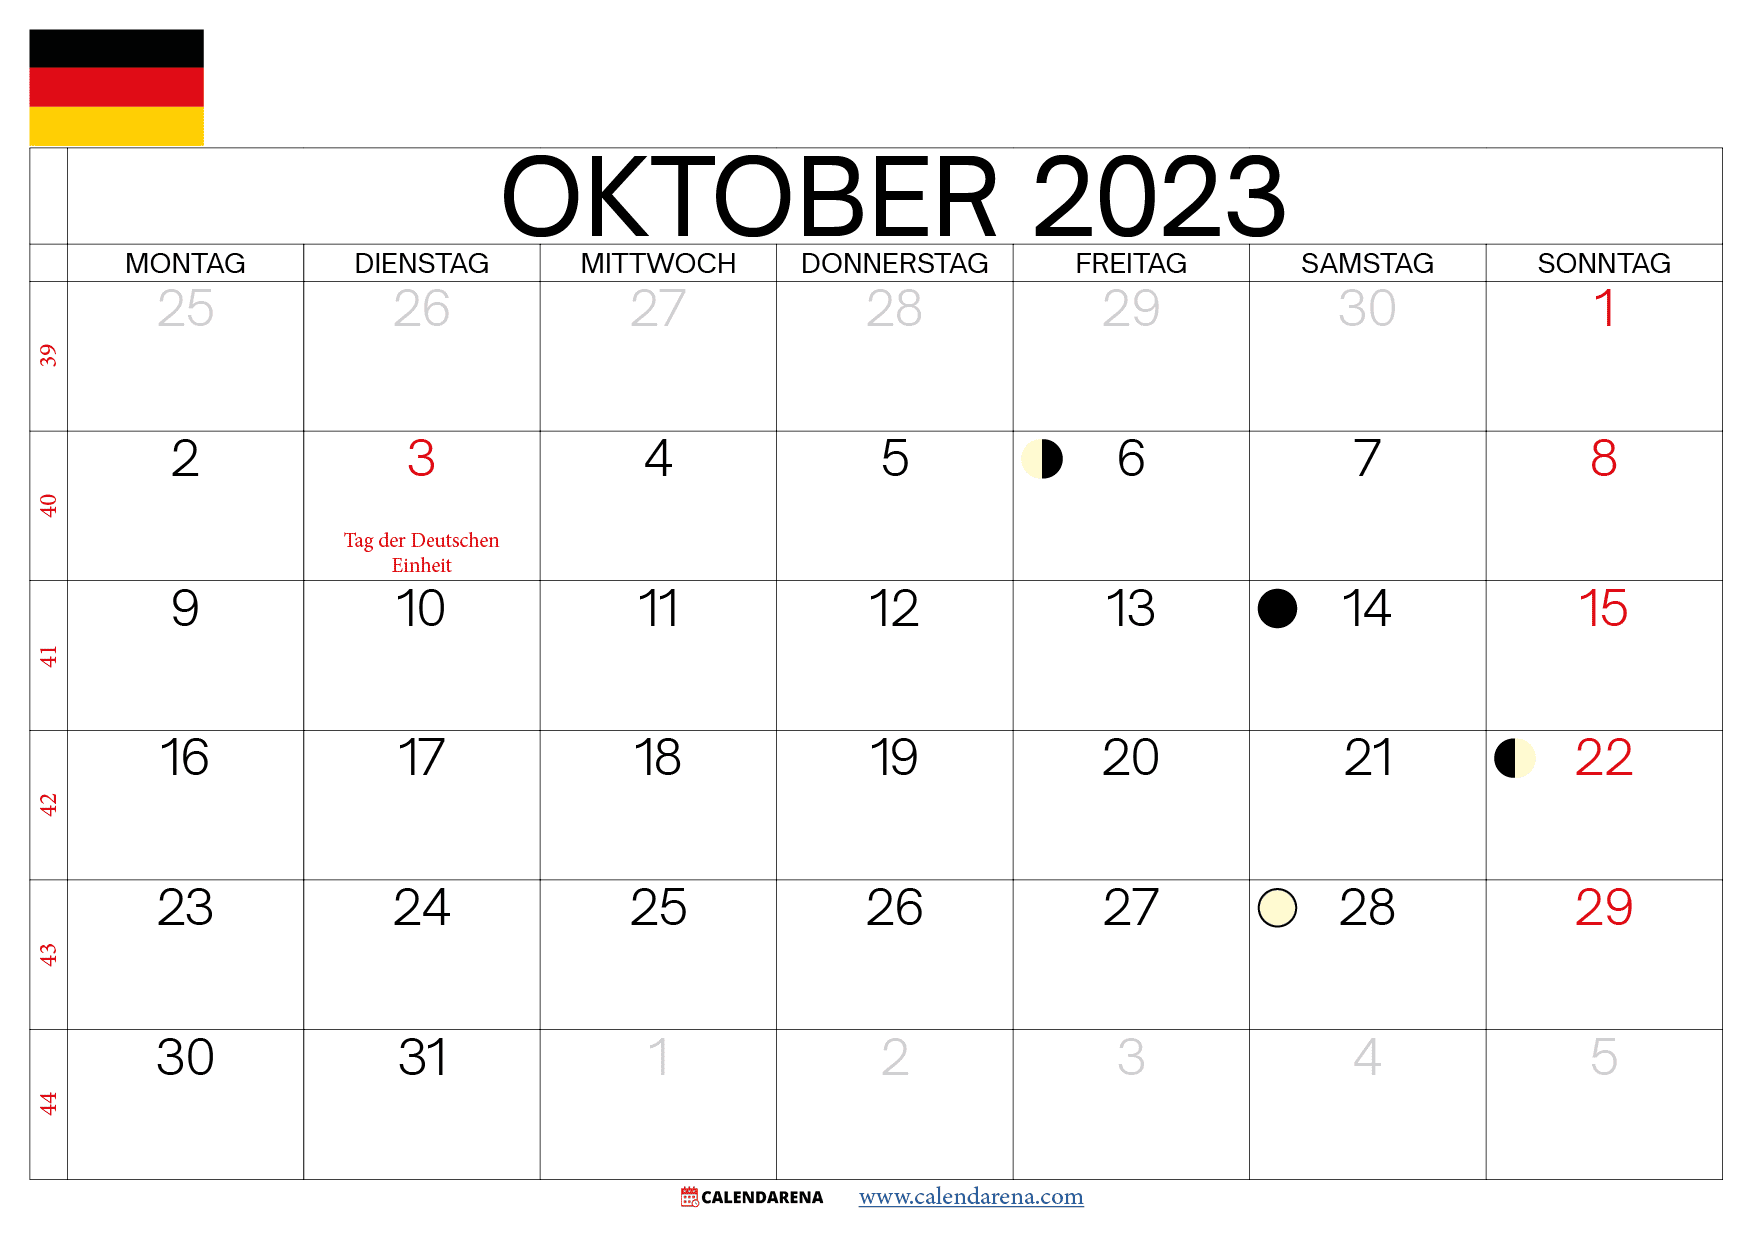 Oktober 2023 kalender Deutschland